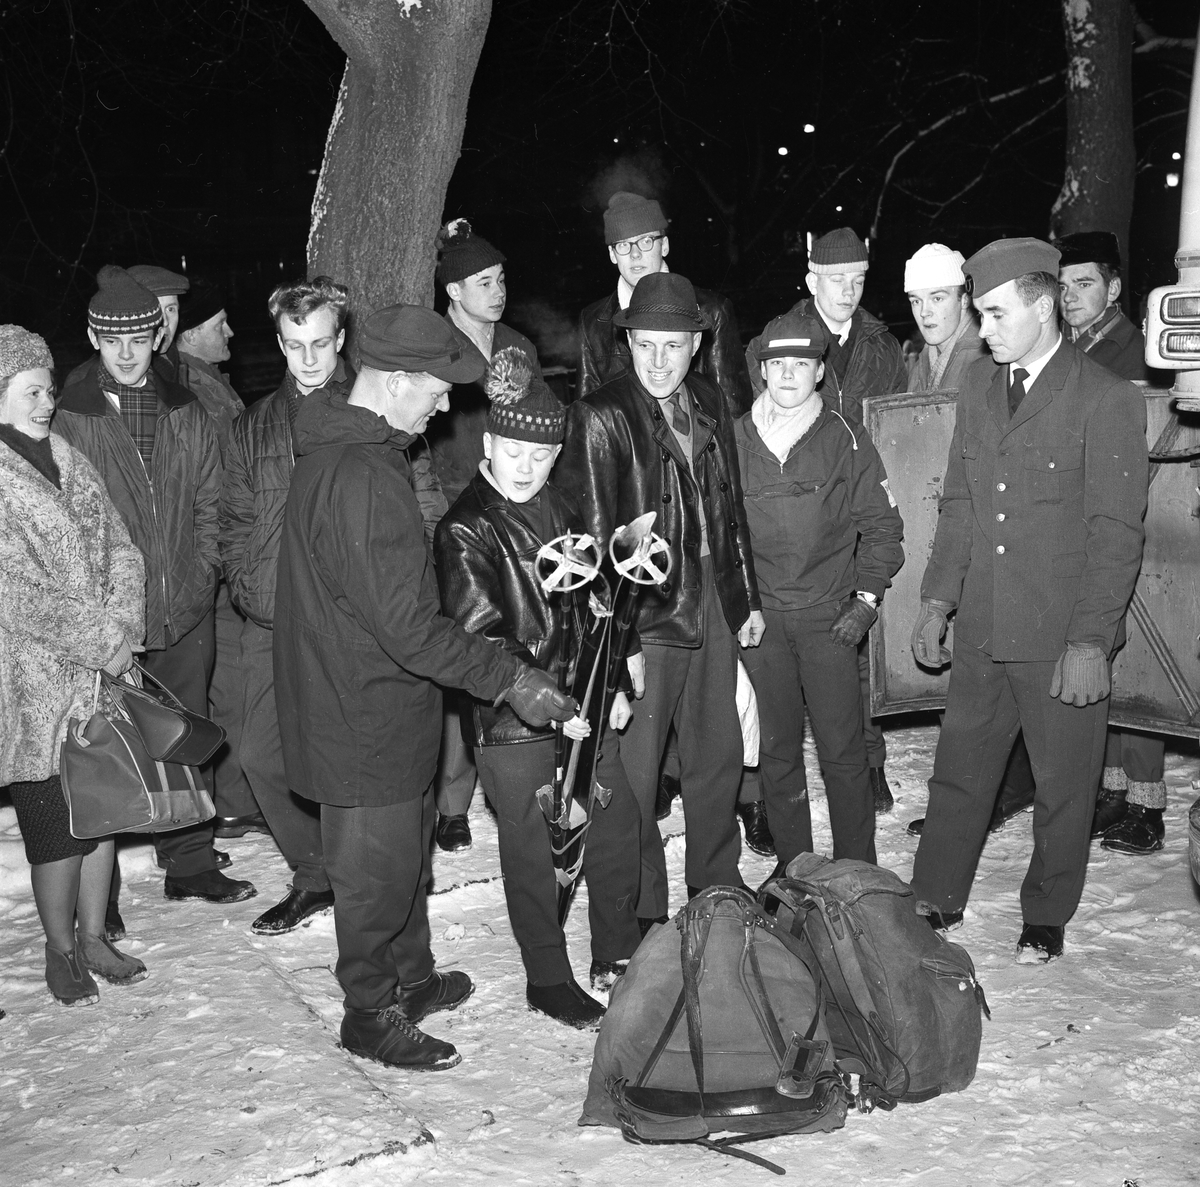 "Upplands skidbas hoppas på dalatrimmad ungdom", Uppsala januari 1962